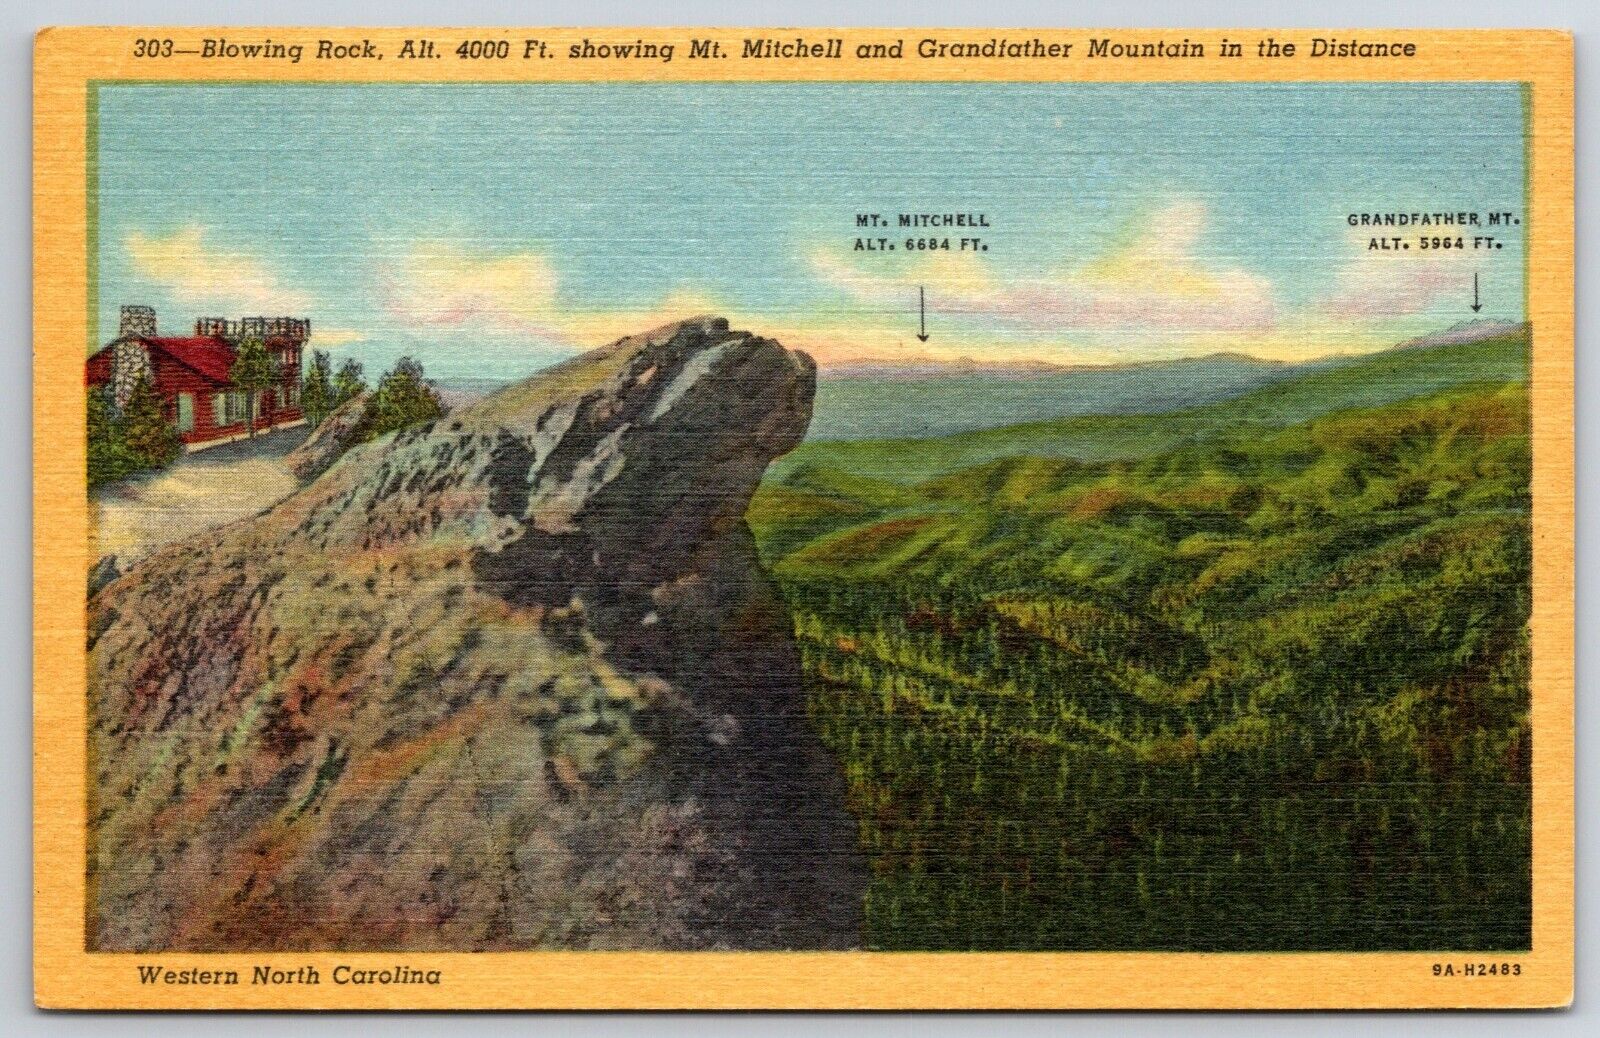 Blowing Rock, NC - North Carolina - w Mt. Mitchell + Grandfather Mt. - Postcard